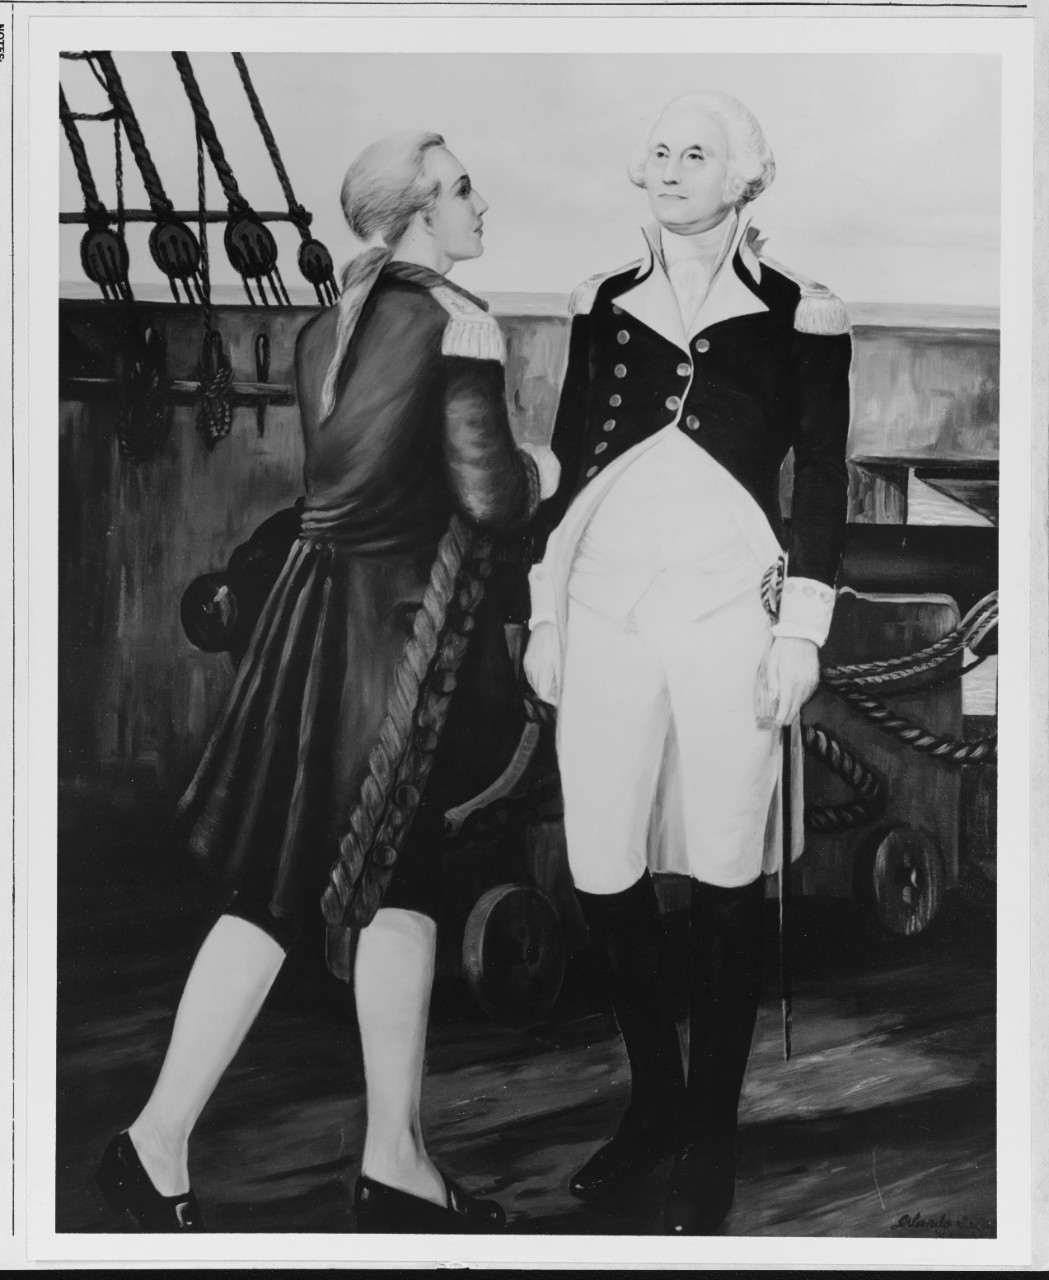 George Washington aboard ship